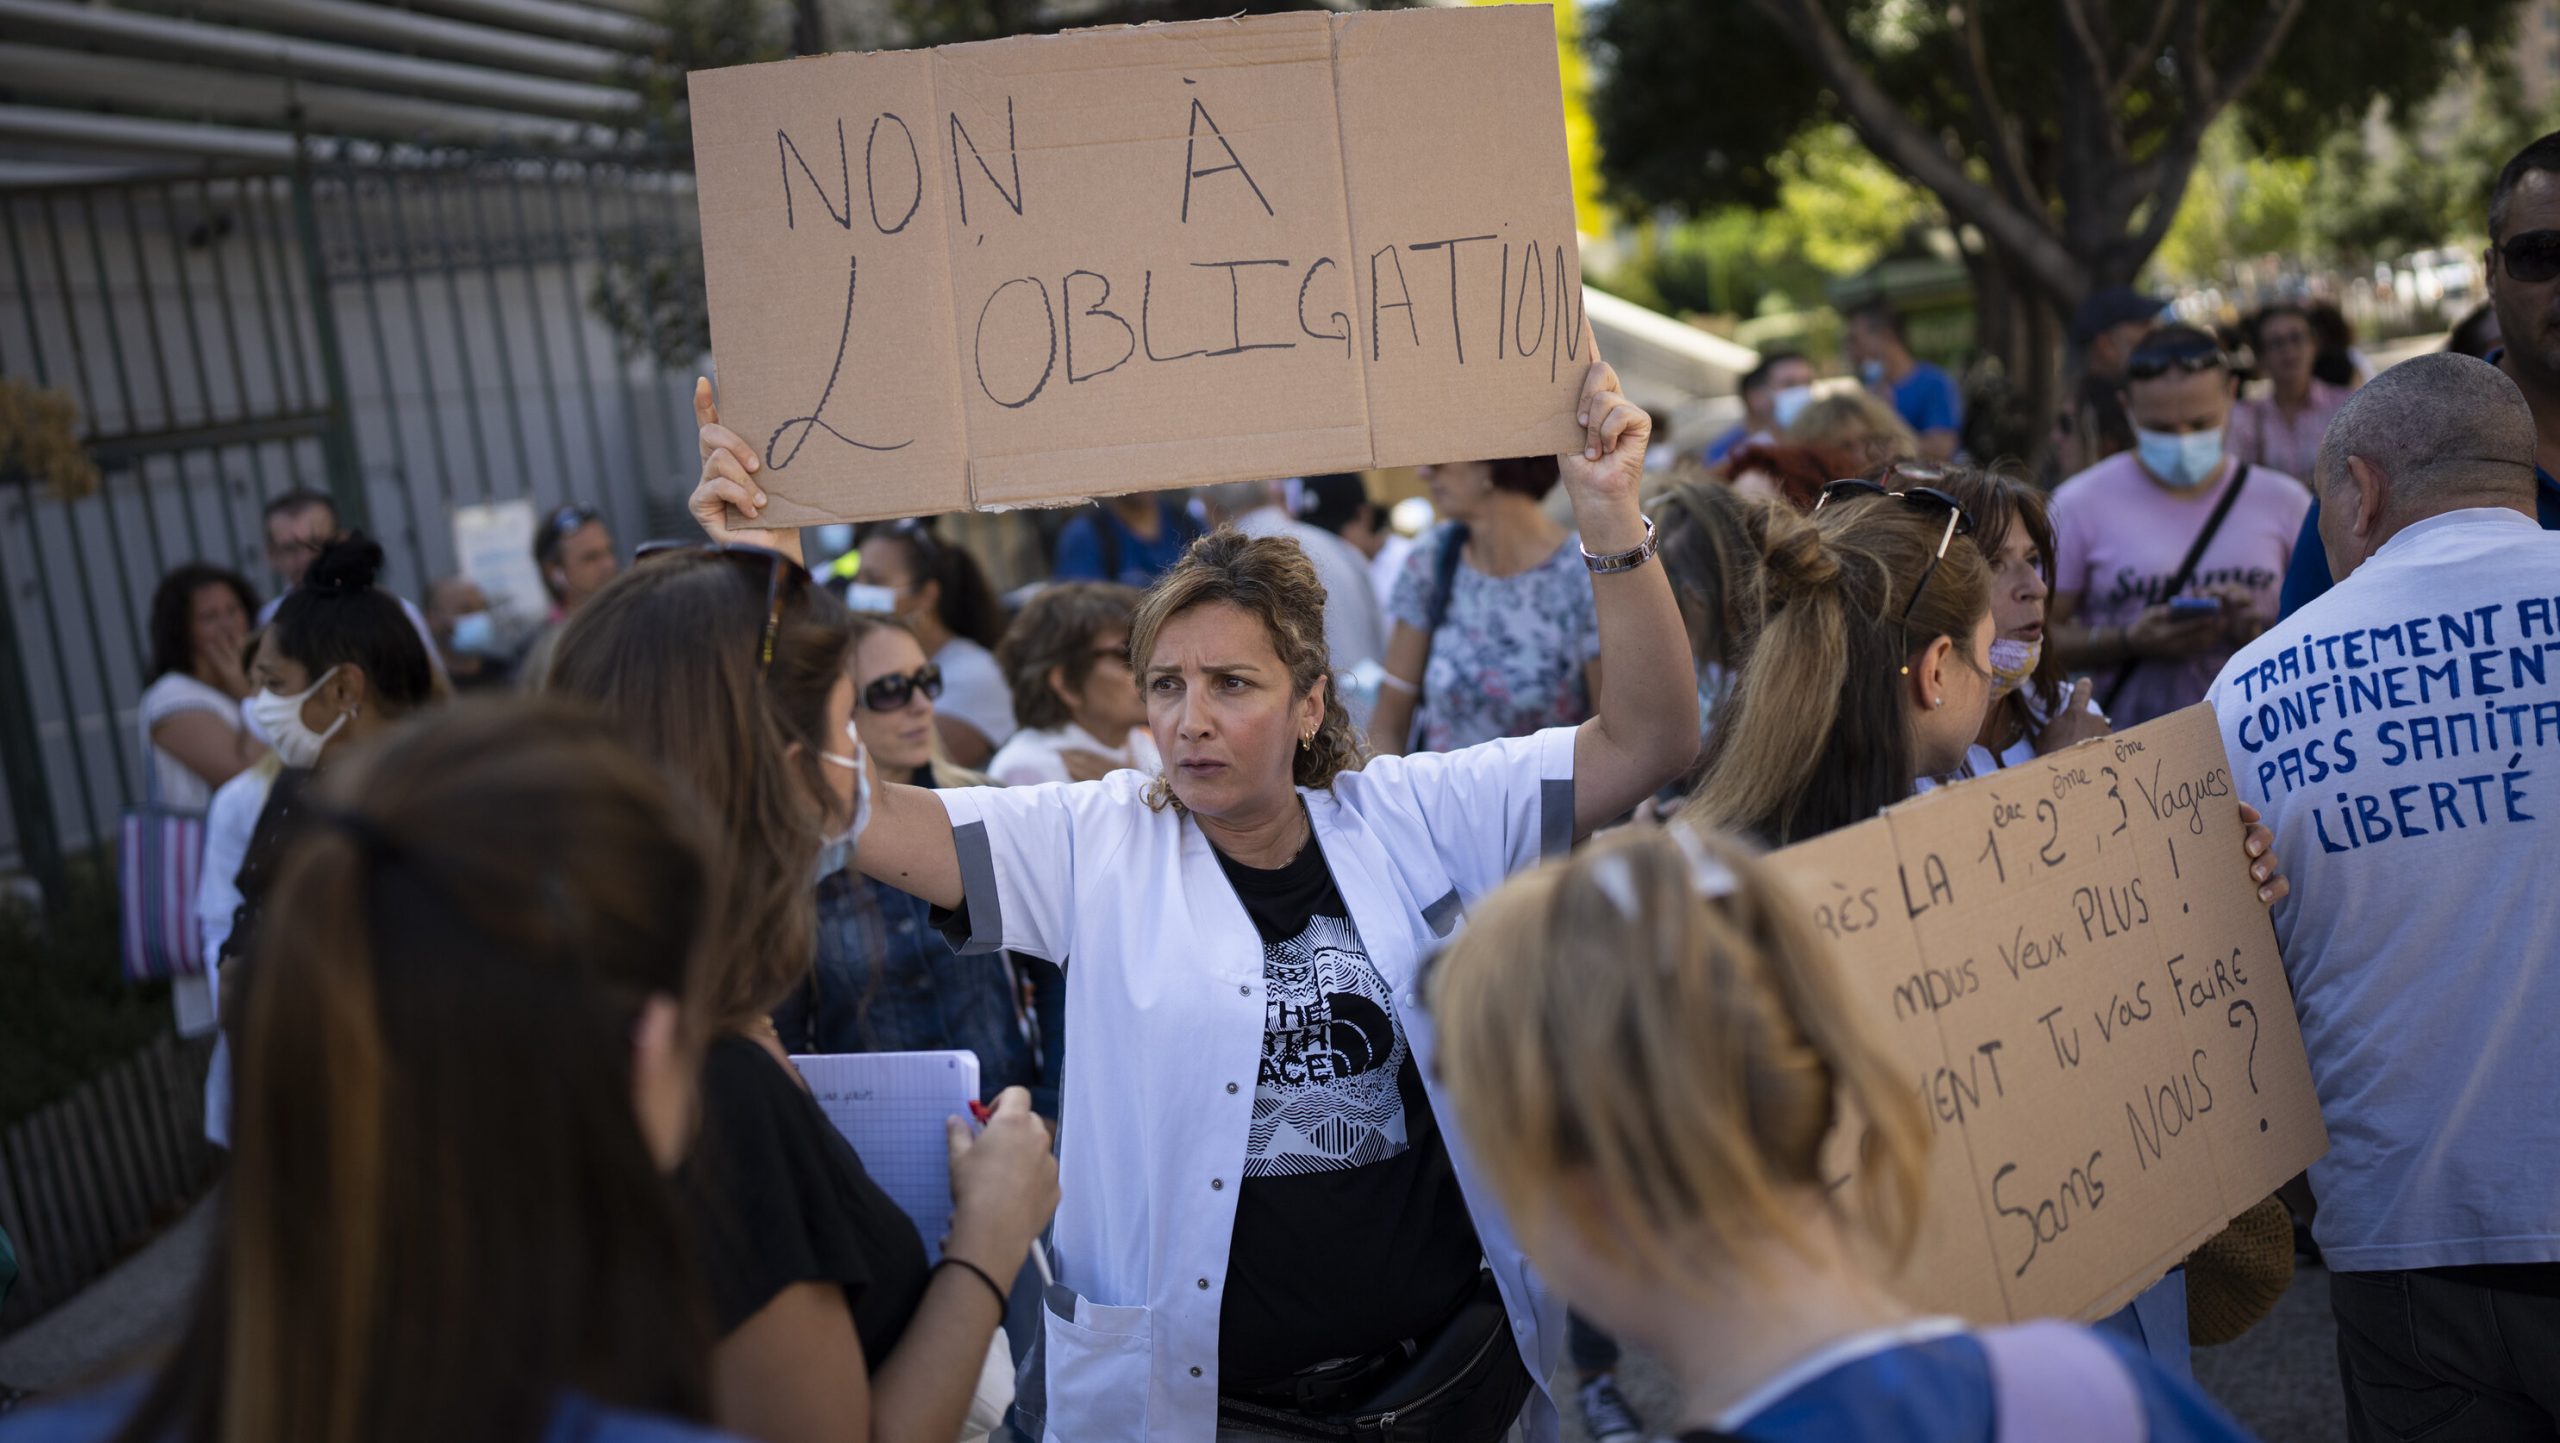 Franța| 3.000 de lucrători din domeniul medical sunt trimiși în concediu fără plată, pentru că refuză vaccinarea anti-Covid